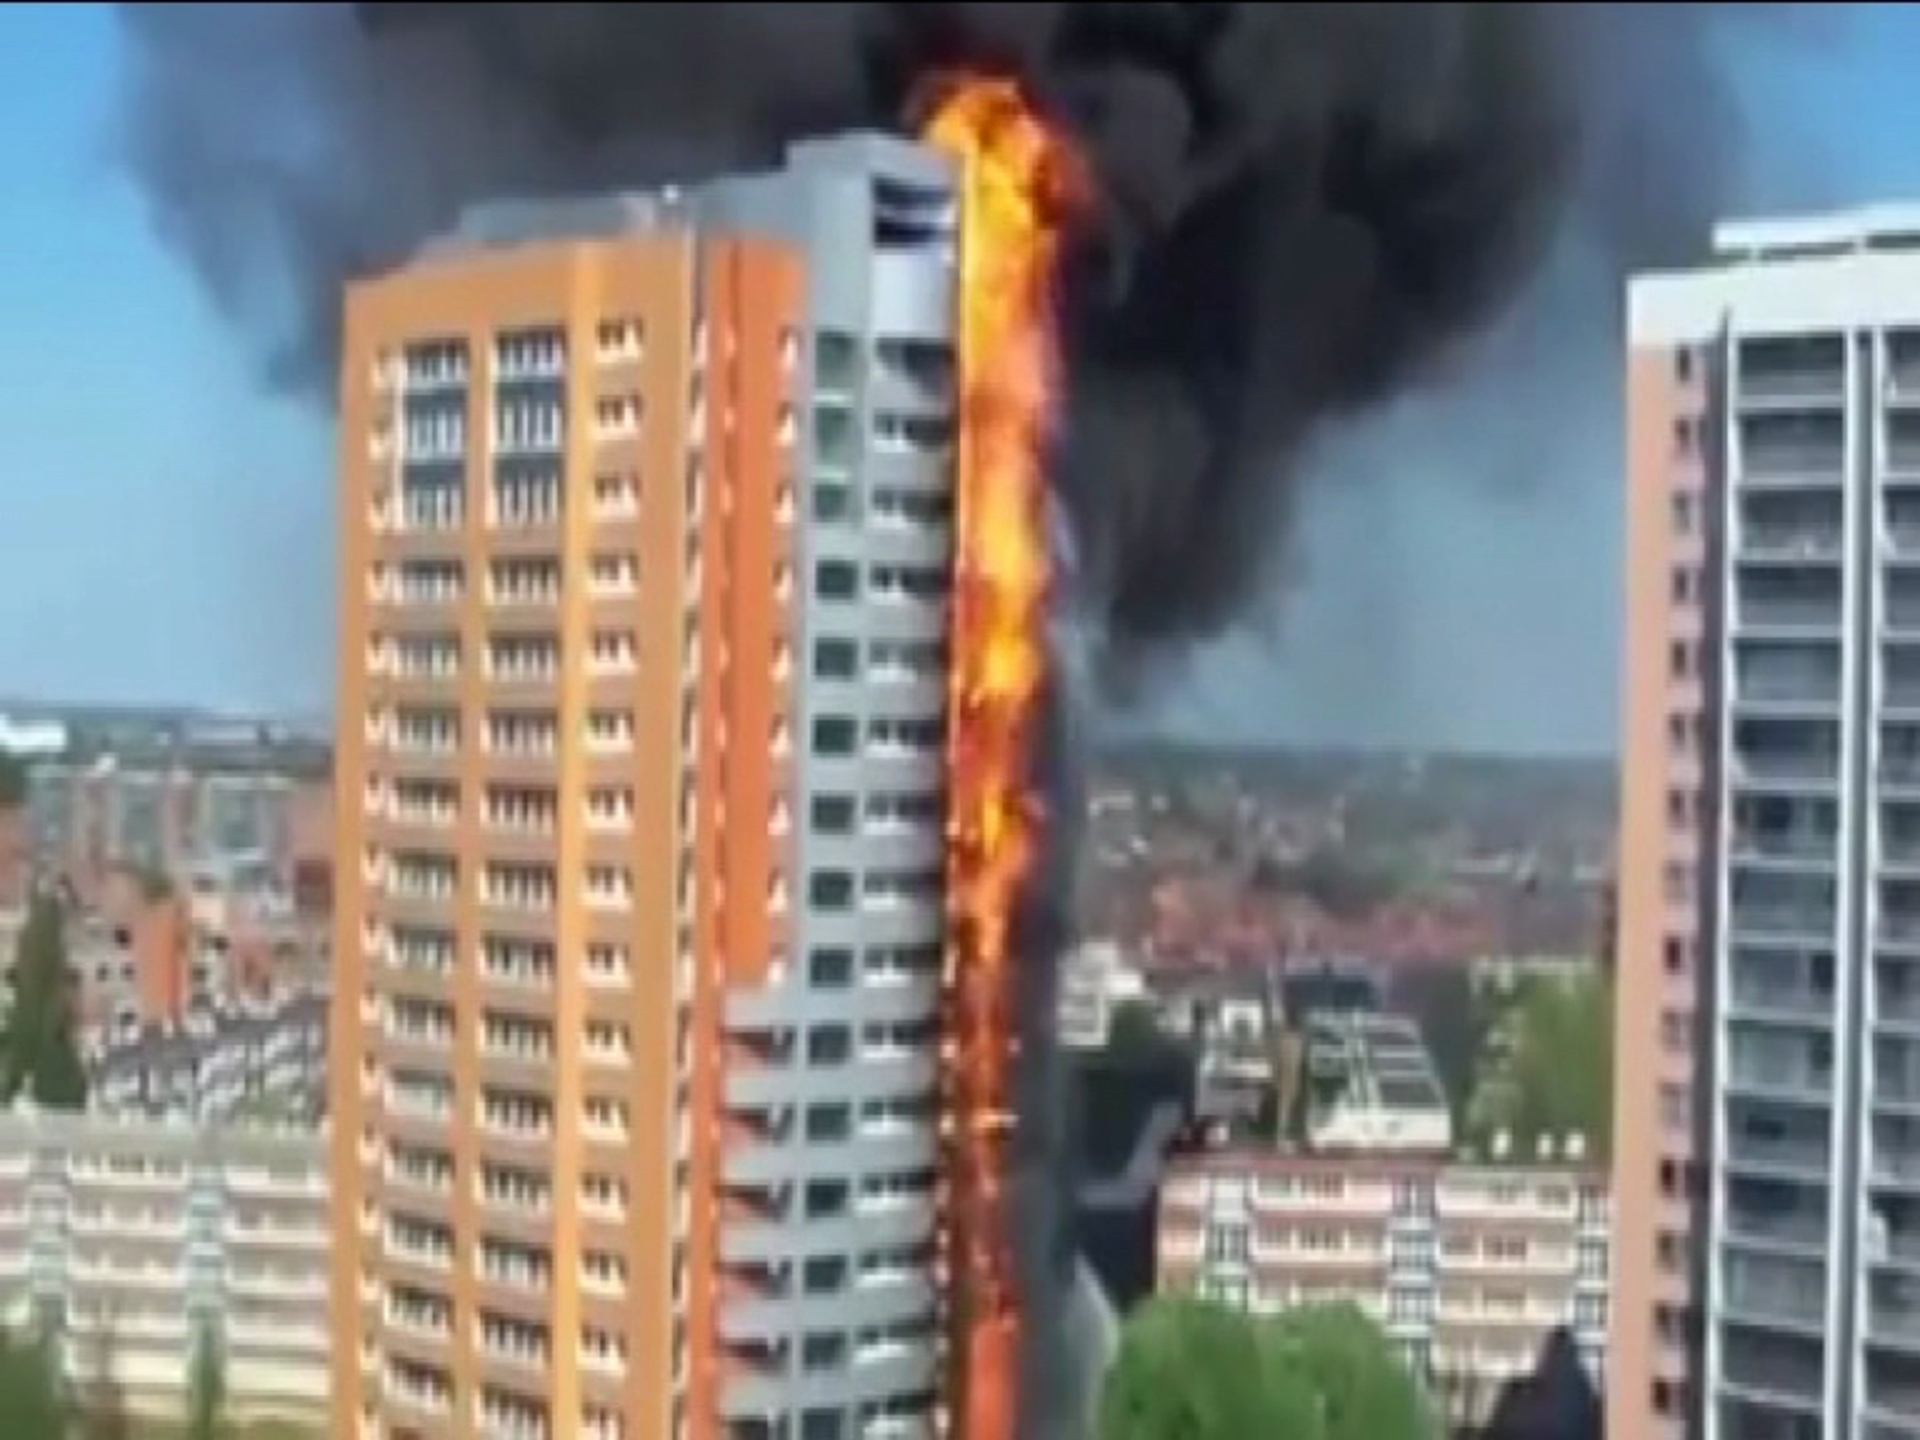 video Divácké zprávy: Tento dům se během několika minut ocitl celý v plamenech díky požáru polysterenového obložení budovy